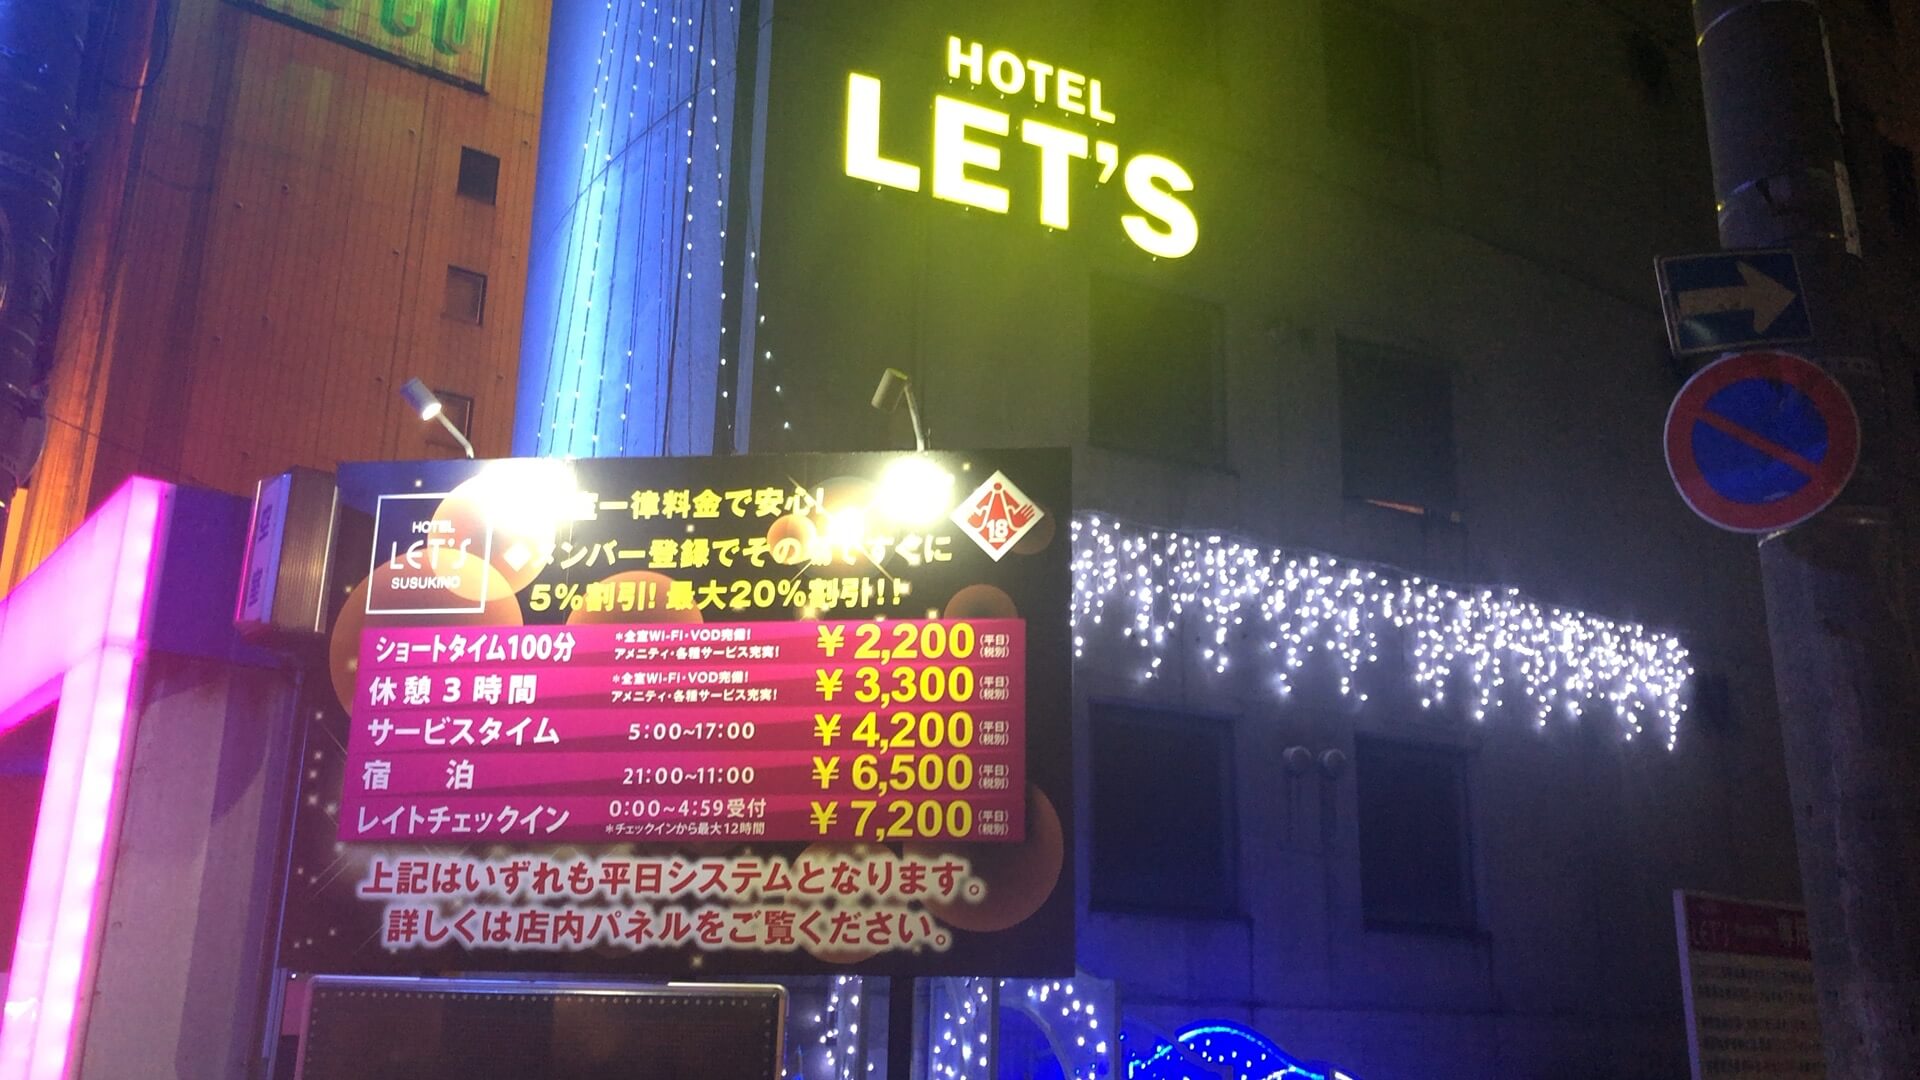 すすきののホテルで休憩できるおすすめのホテル20選　2位:ホテル レッツSUSUKINO